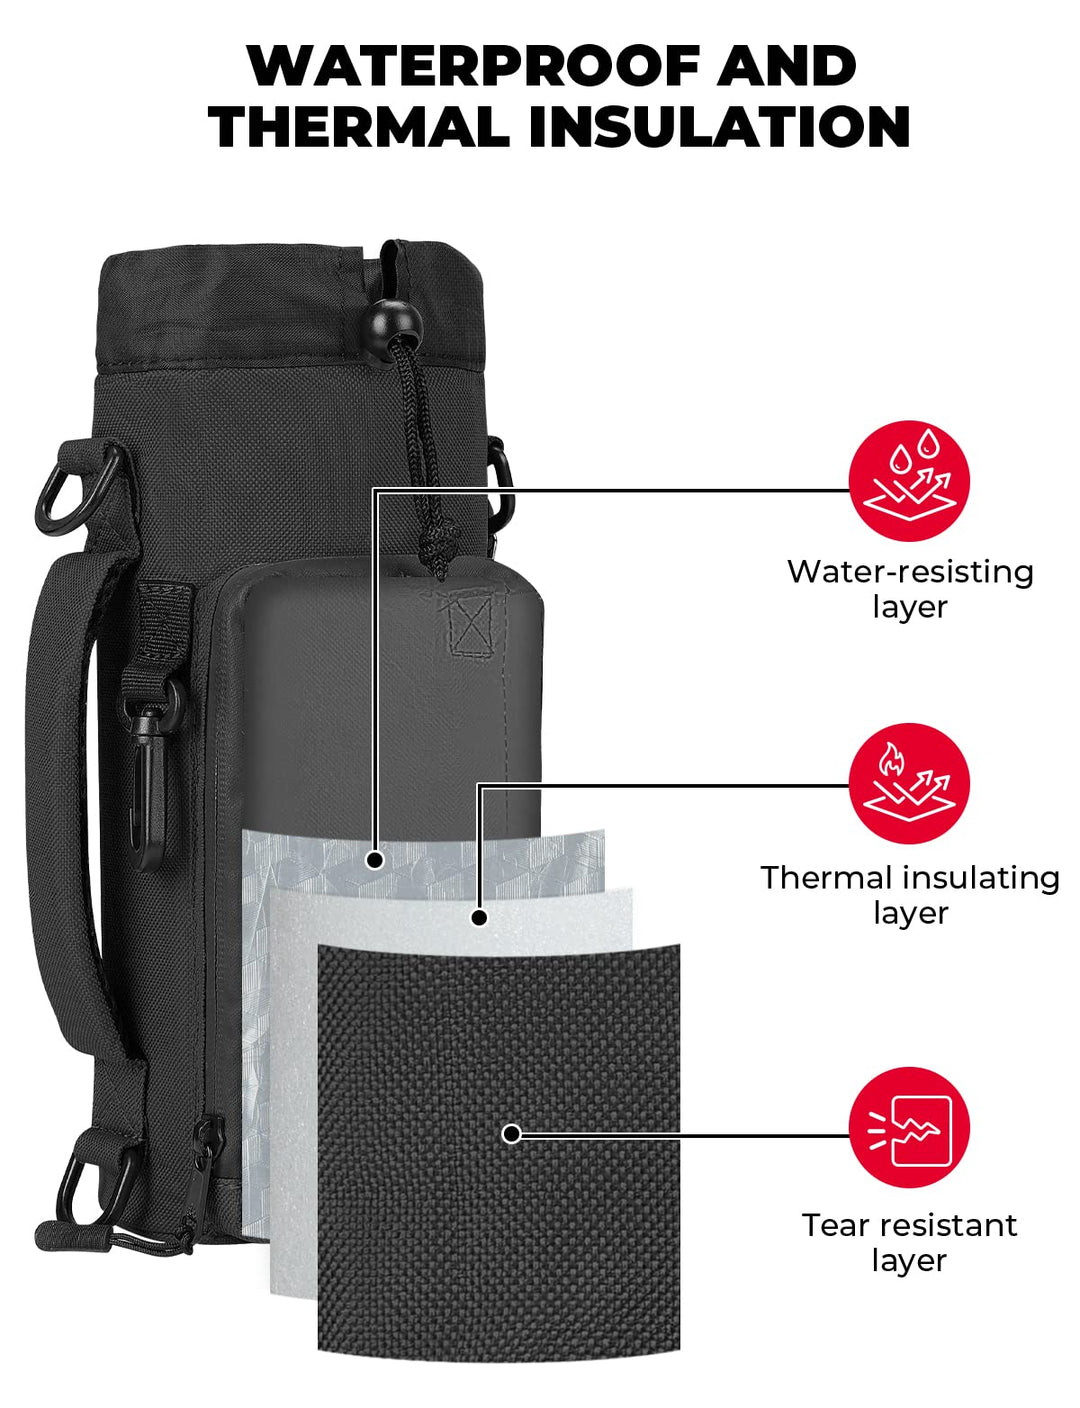 32 oz Water Bottle Holder Carrier with Adjustable Shoulder Strap – Kemimoto